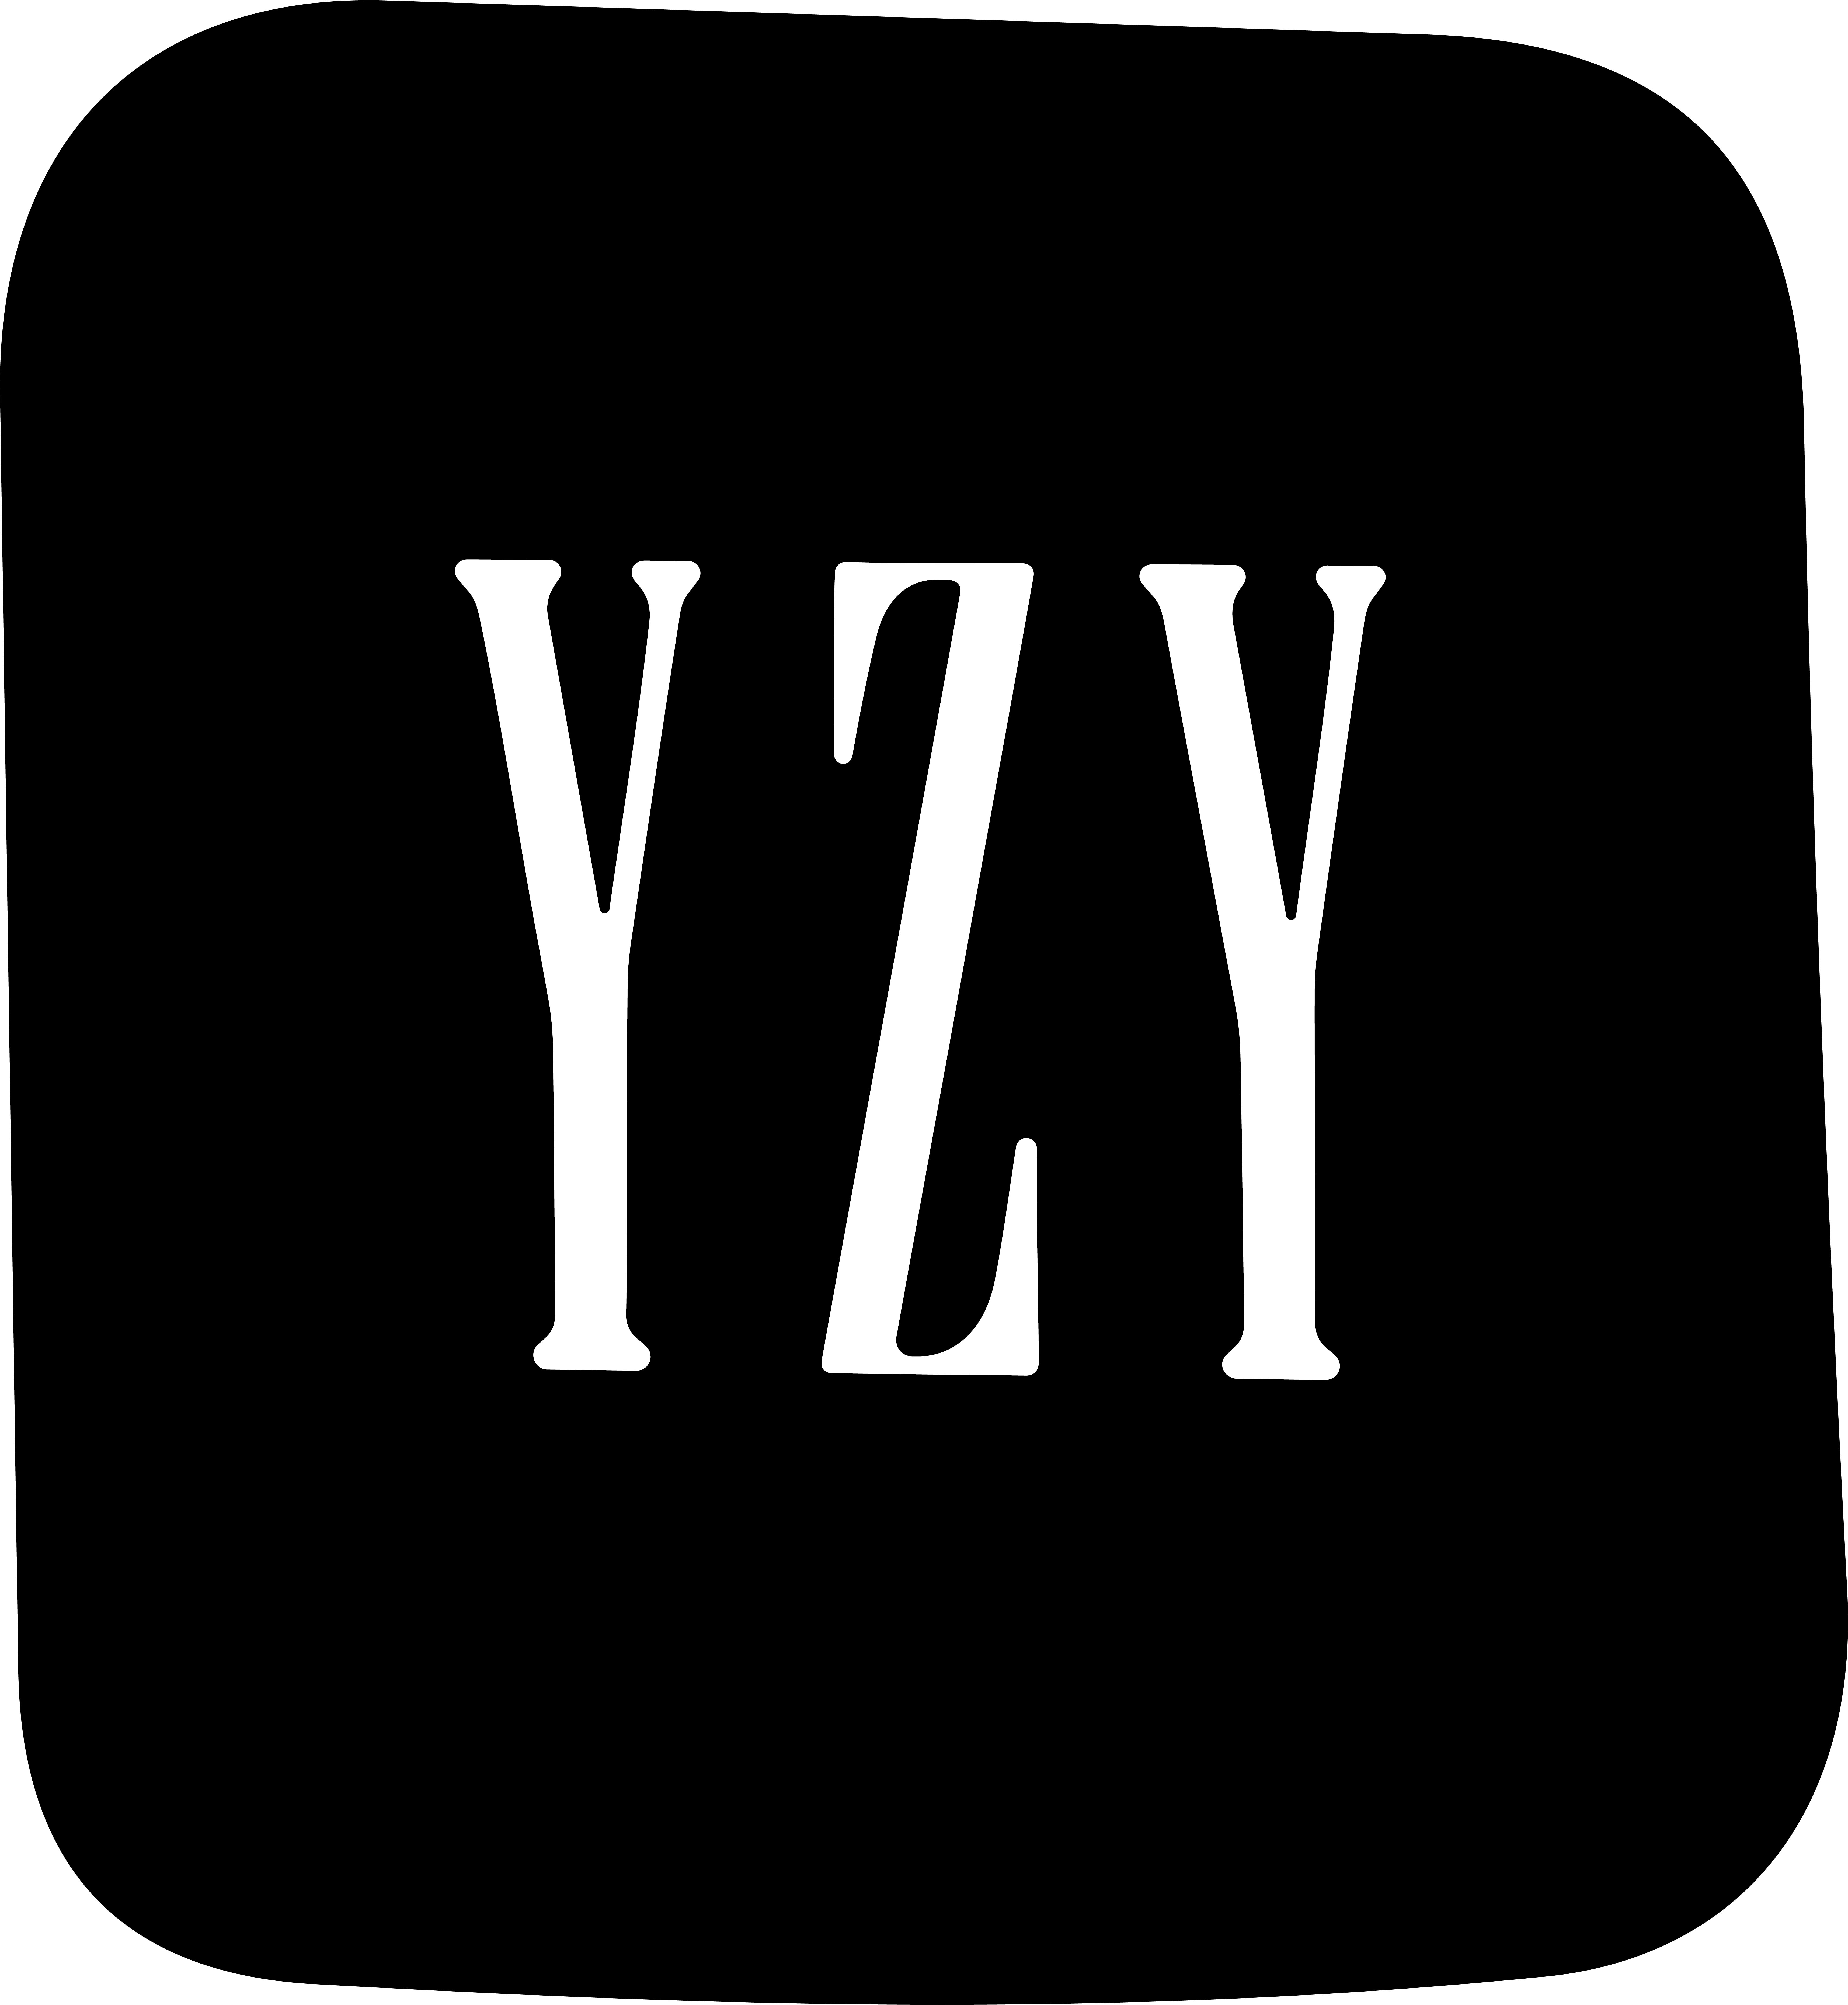 Yeezy Gap Balenciaga logo